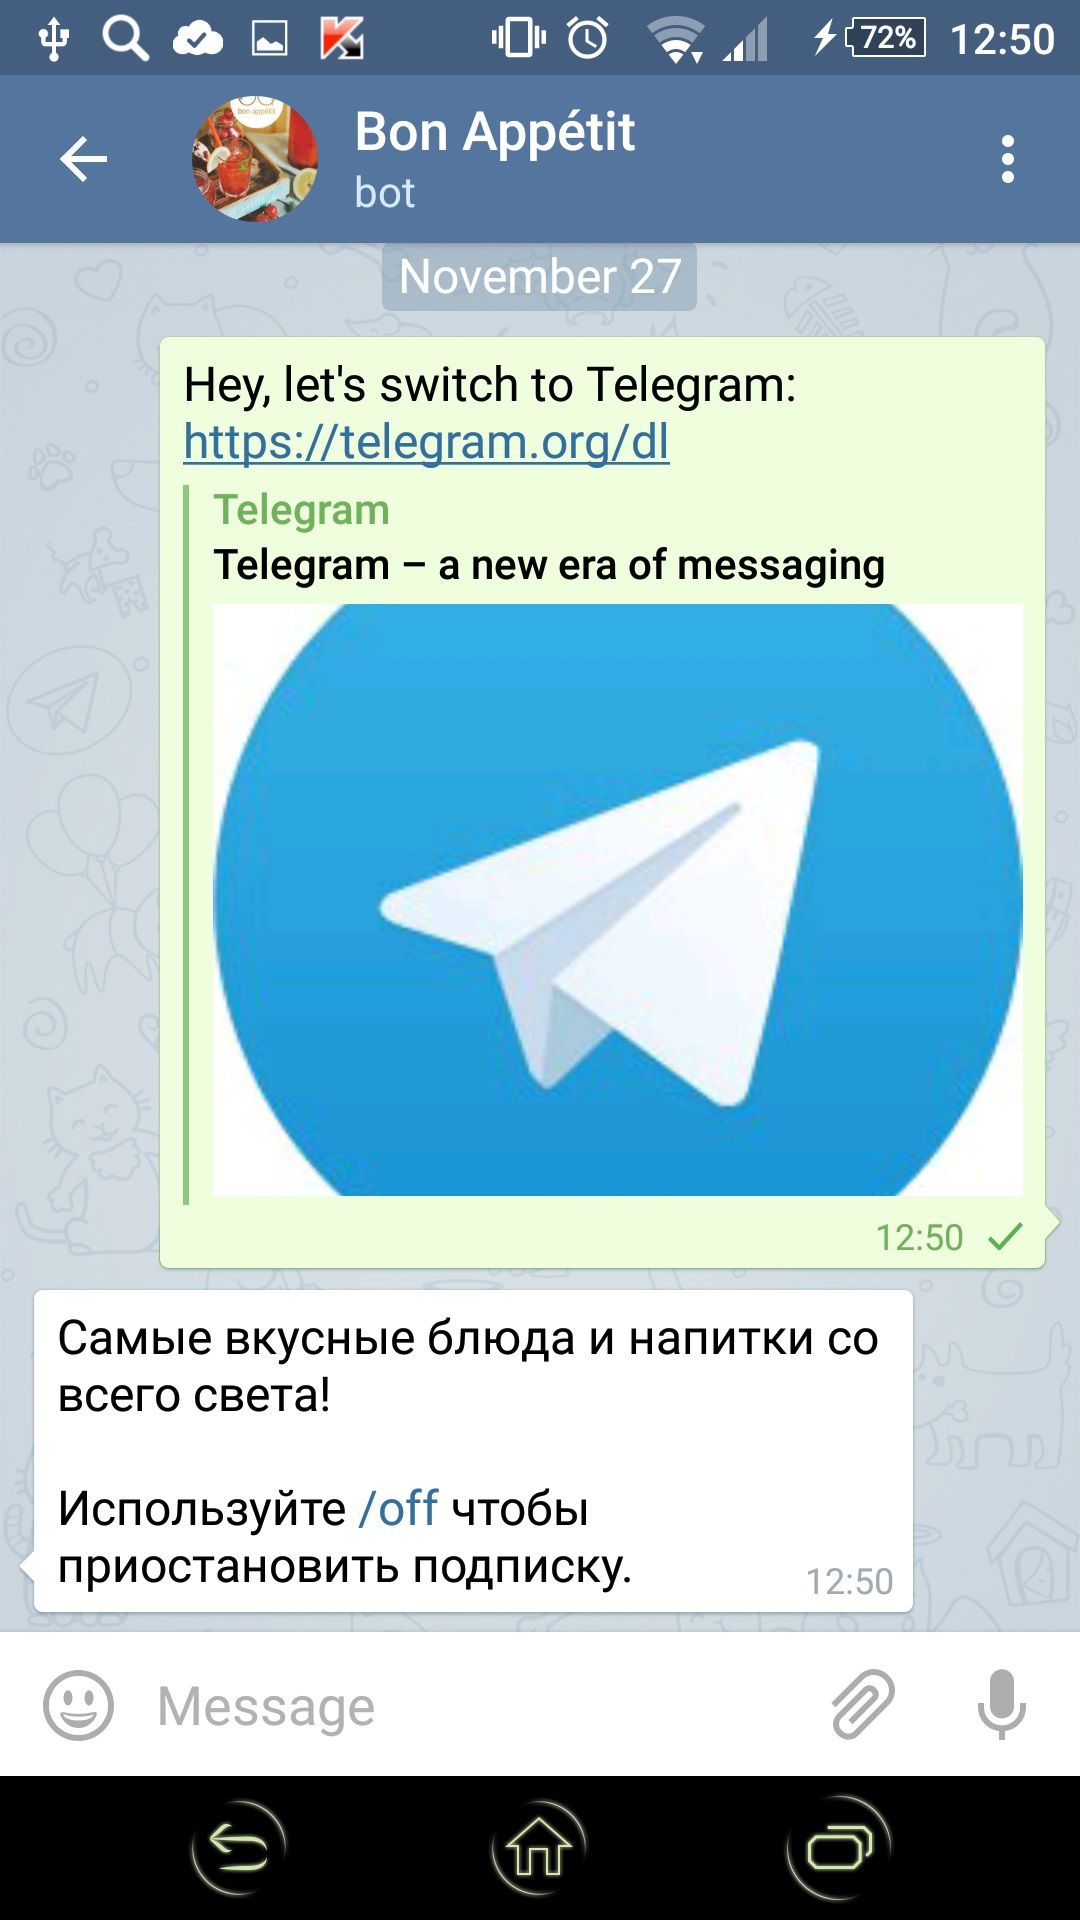 Как скачать приложение телеграмм на телефон бесплатно на русском языке андроид фото 88